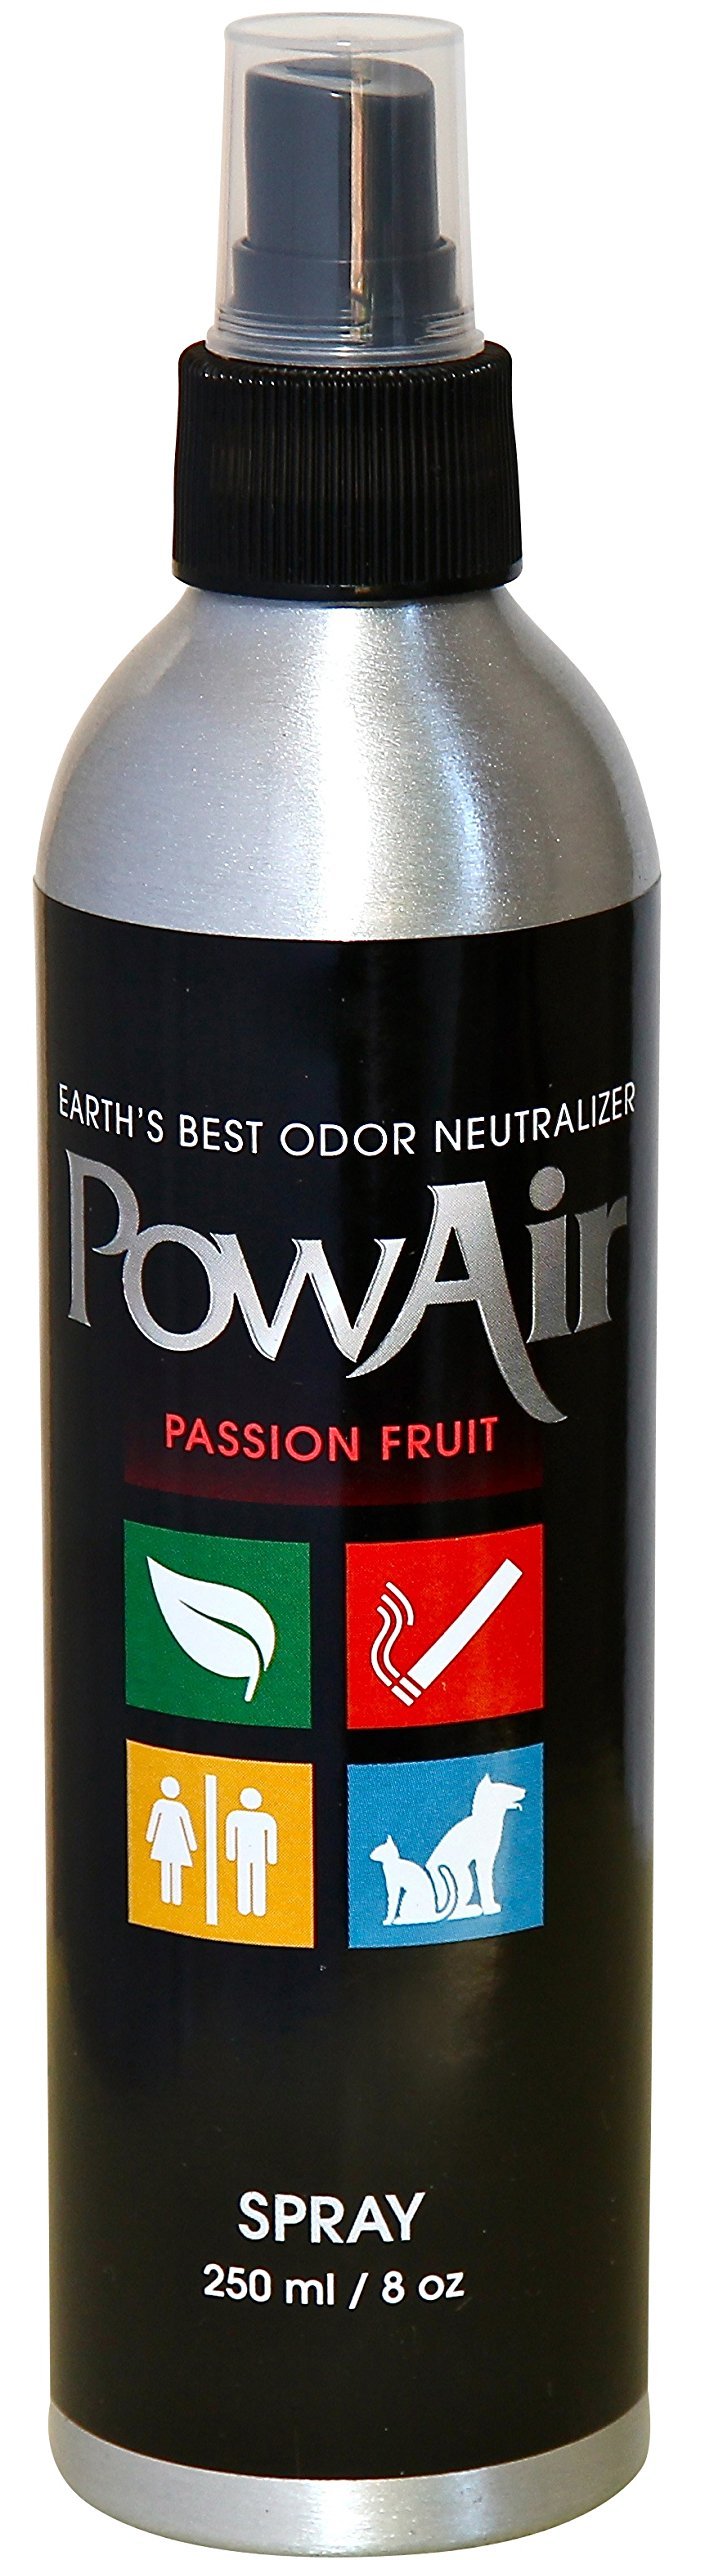 [Australia] - PowAir Passion Fruit Odor Neutralizer Spray 